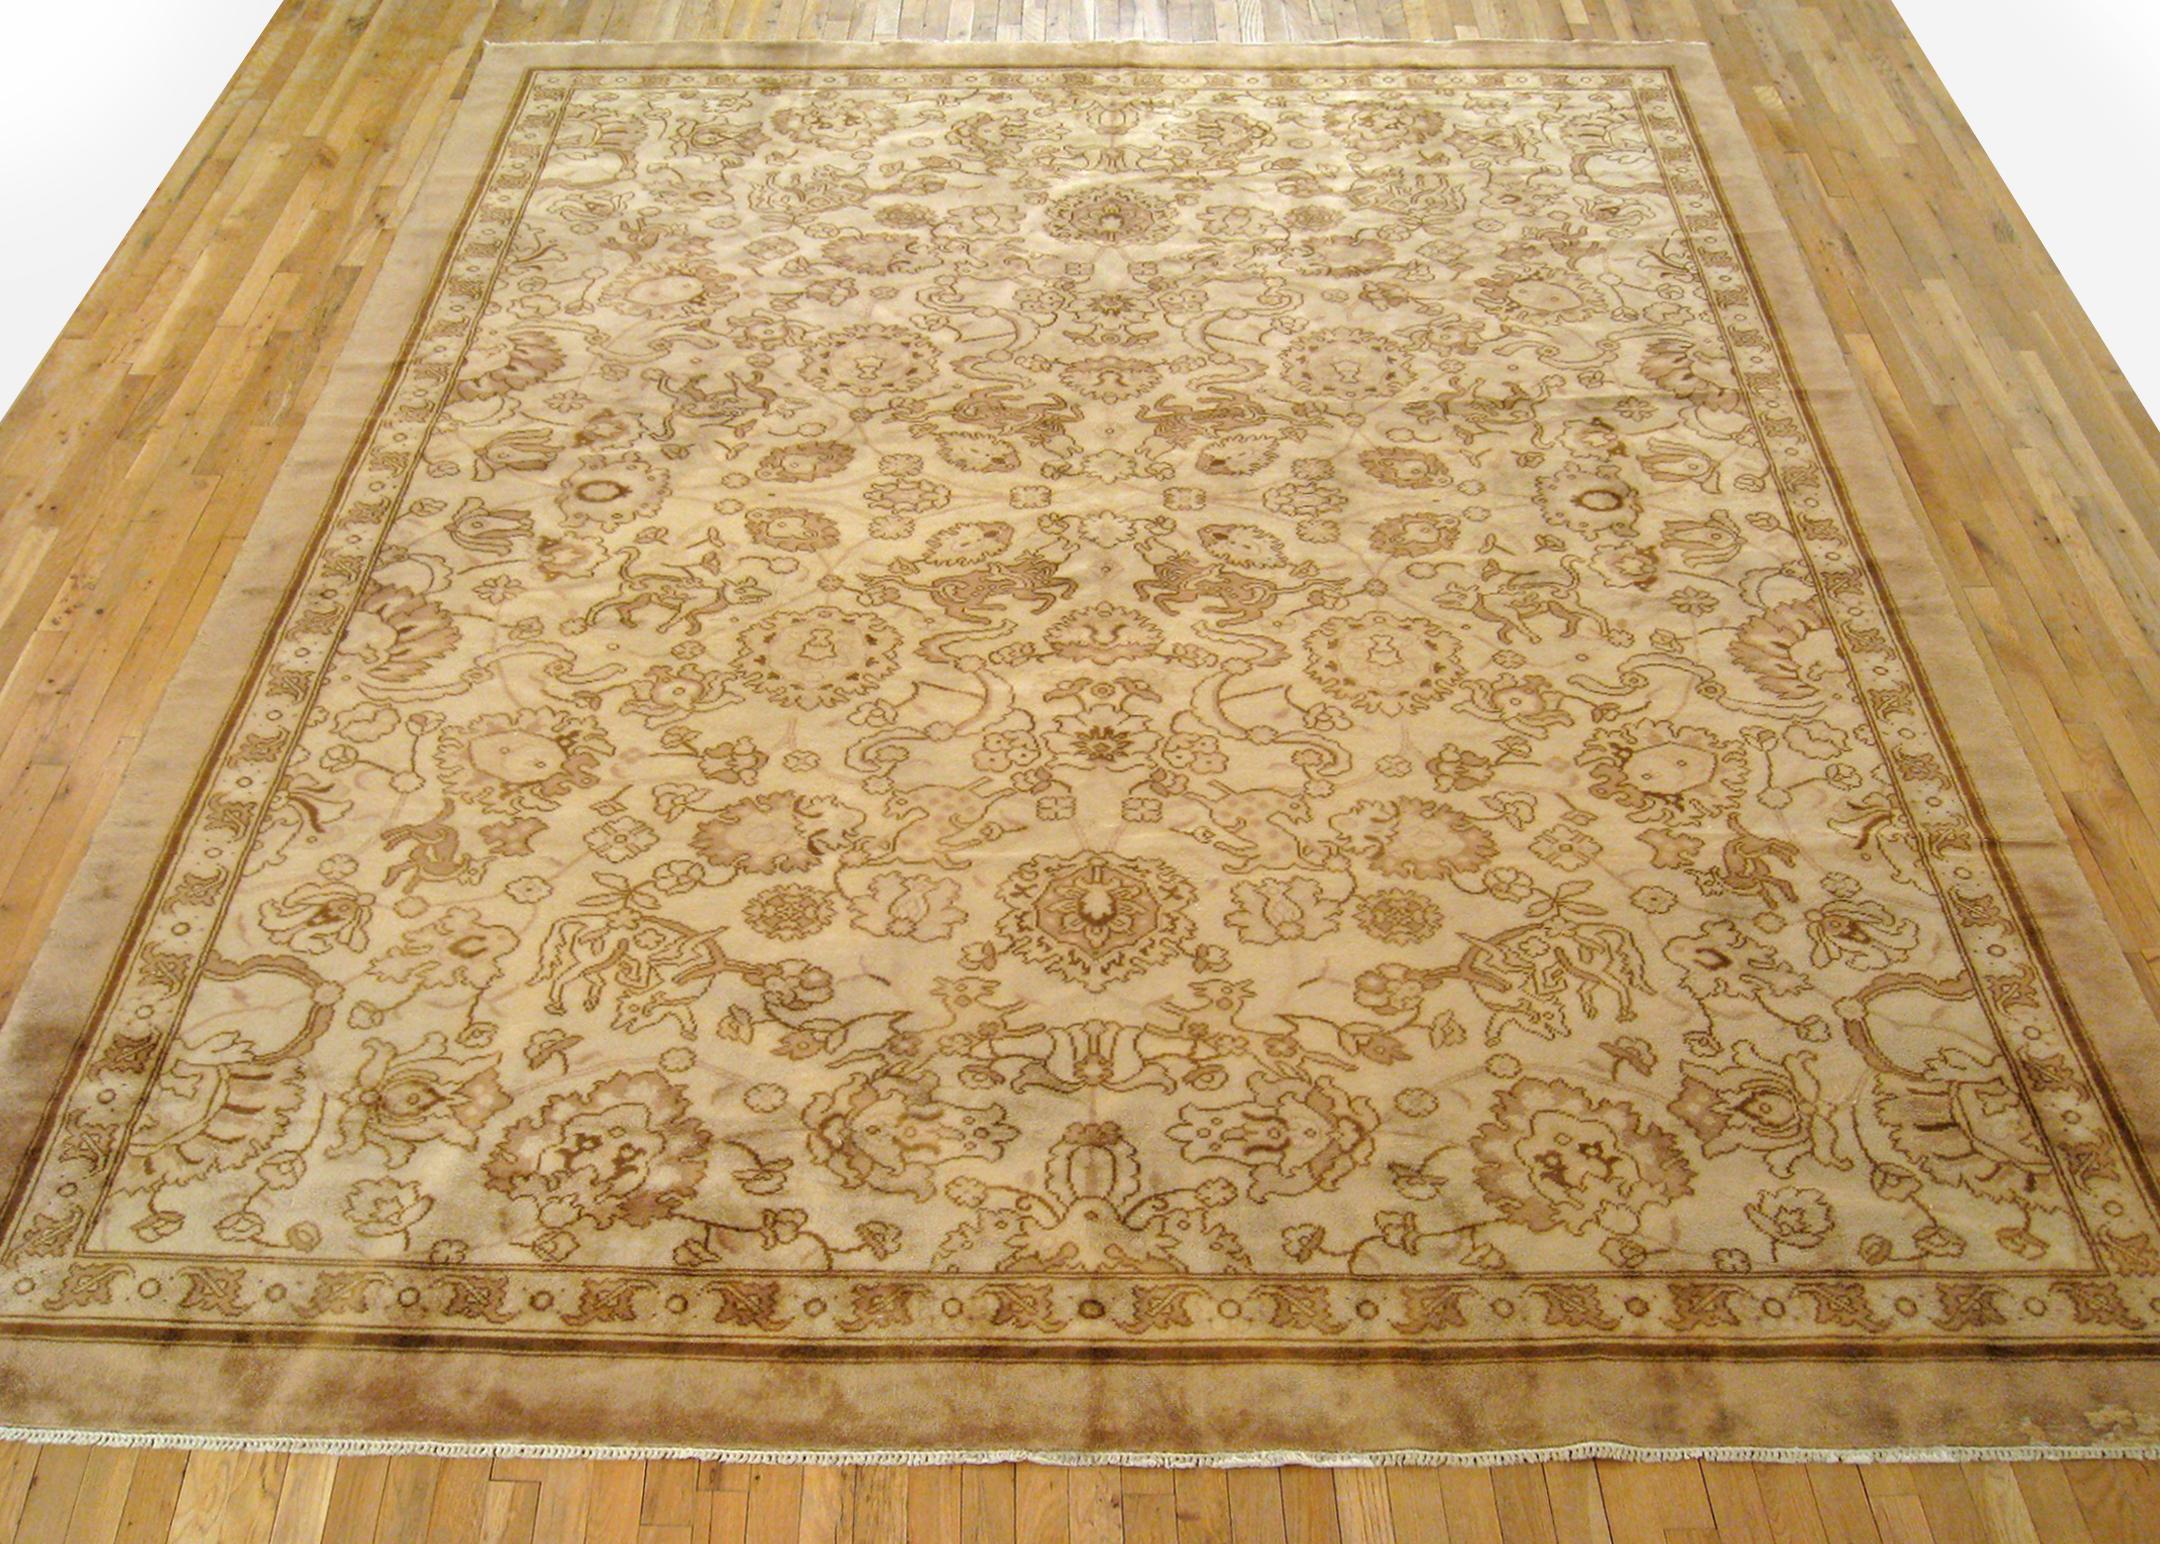 Antiker europäischer Savonnerie-Teppich, Zimmergröße, um 1930

Ein einzigartiger antiker europäischer Savonnerie-Orientalteppich, handgeknüpft mit kurzem Wollflor. Dieser schöne Teppich zeigt Palmetten auf dem beigen Hauptfeld mit beiger